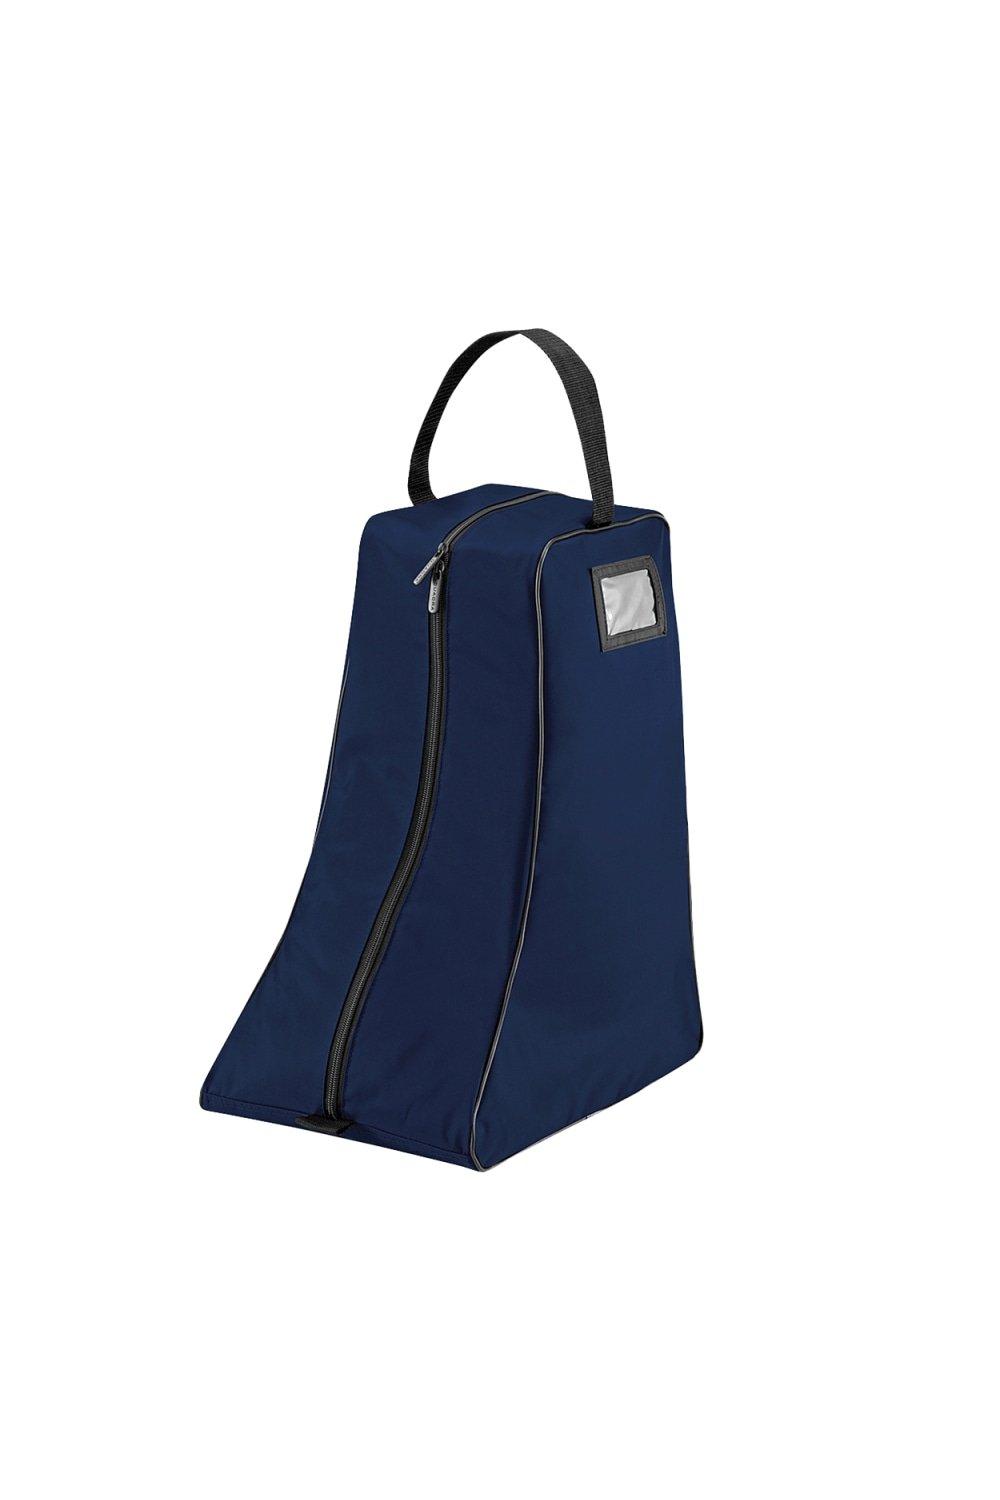 Большая сумка для обуви Quadra, темно-синий матовая большая сумка для снастей 36 ltr темно серый камуфляж унисекс